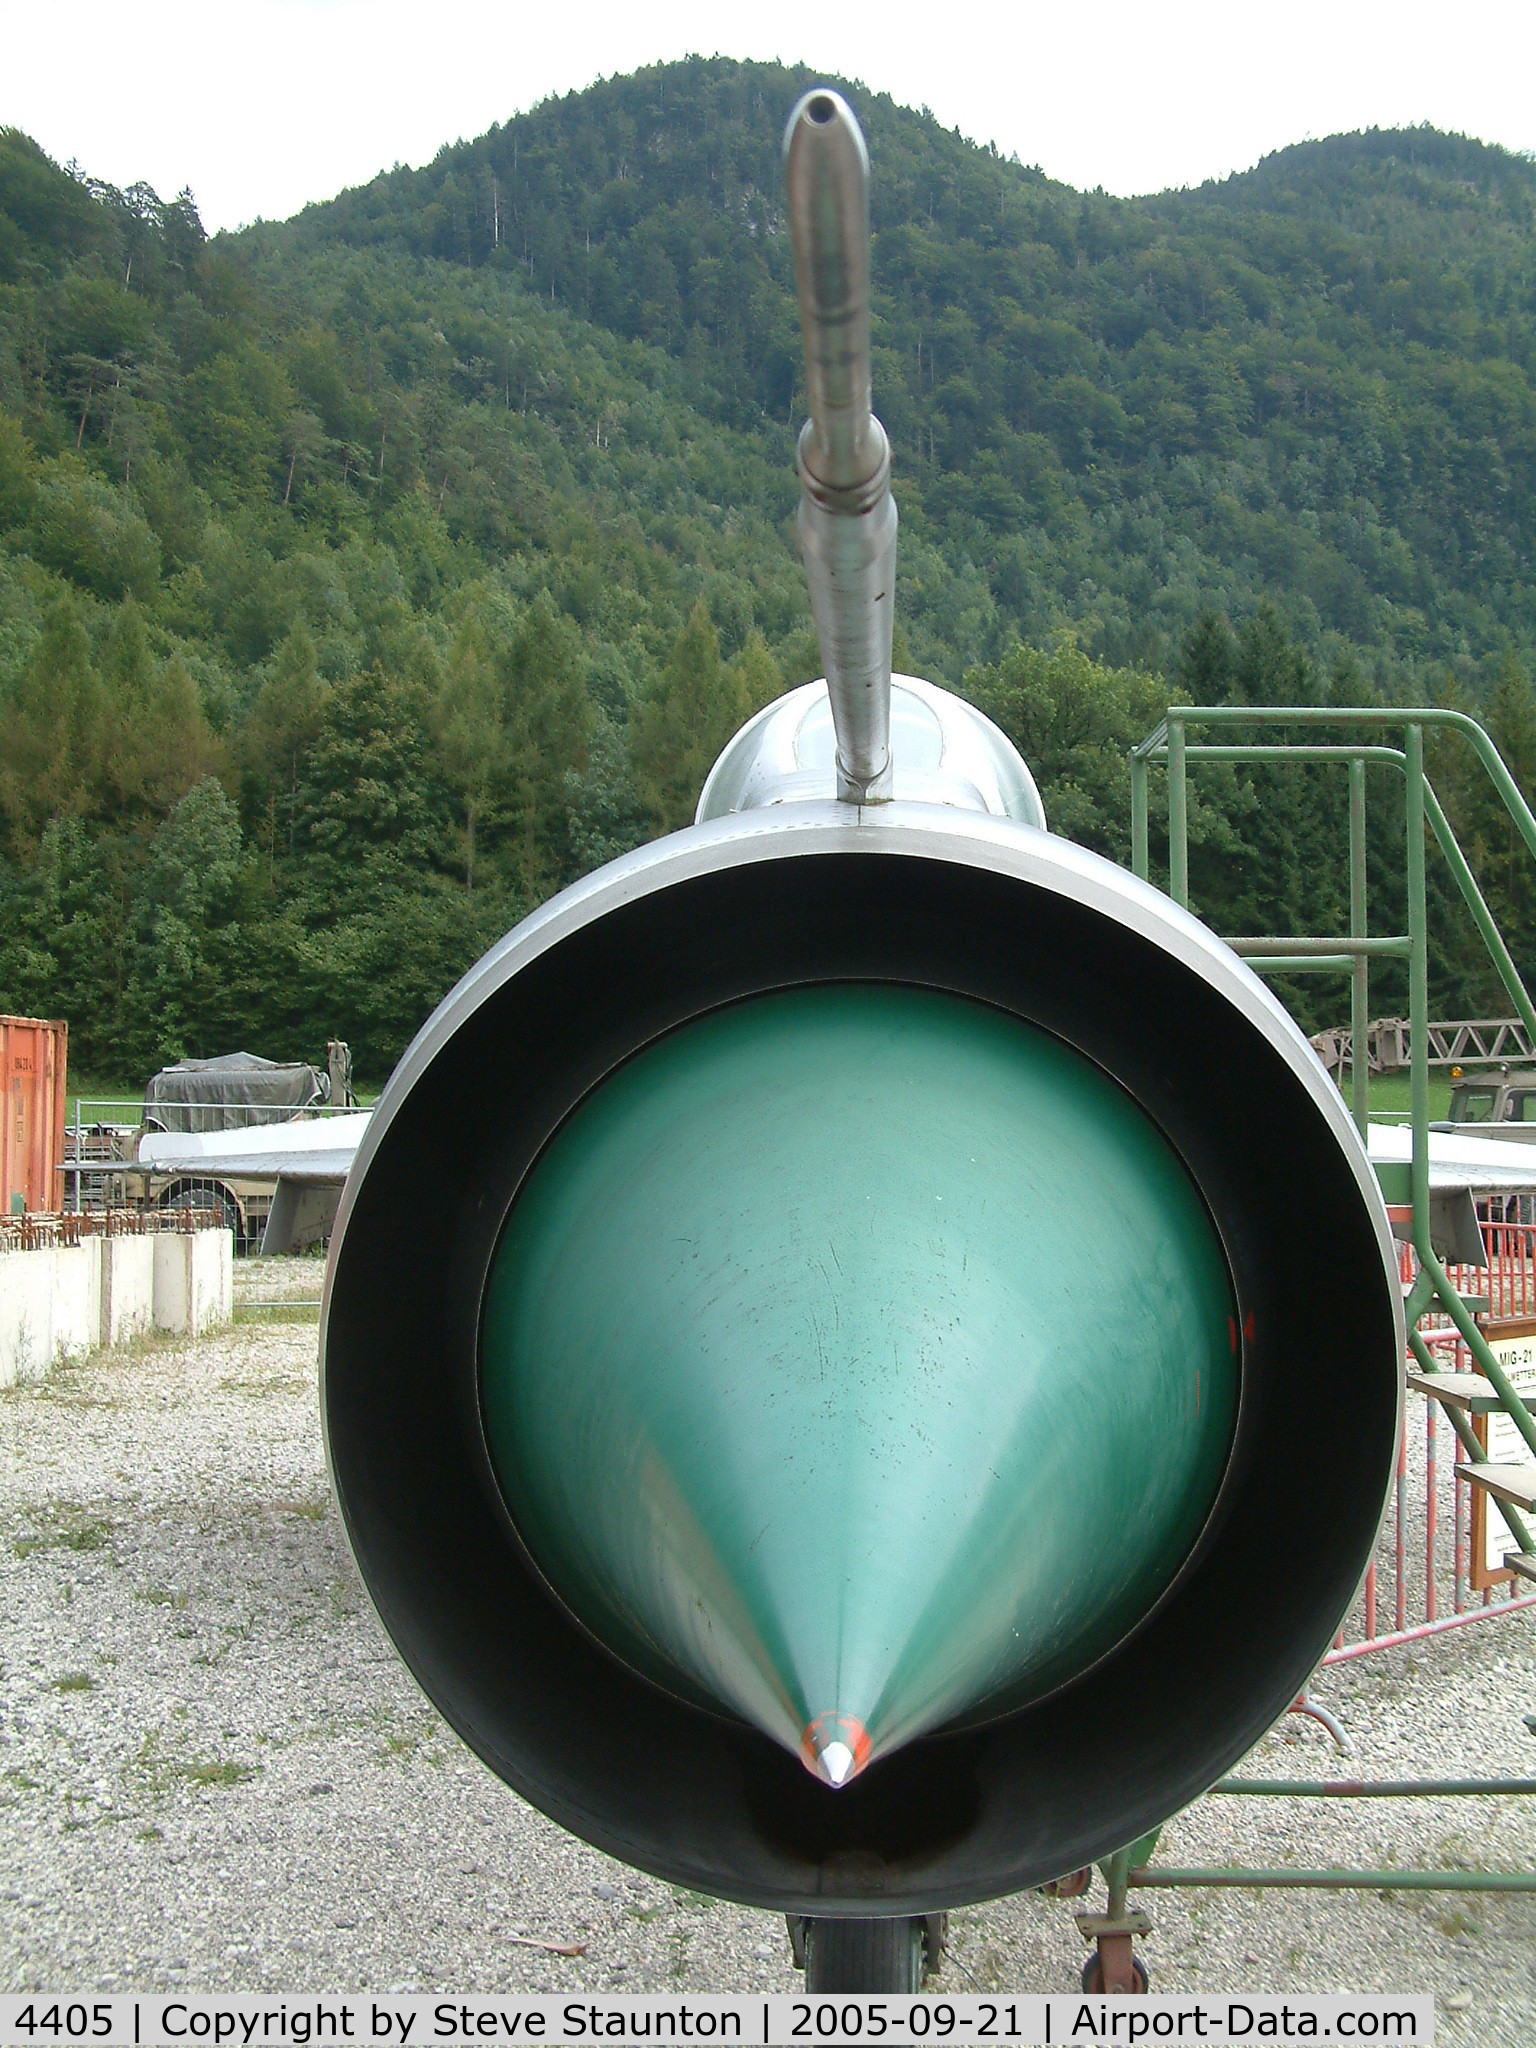 4405, Mikoyan-Gurevich MiG-21PFM C/N 764405, Taken at Bad Ischl Museum, Austria 21st September 2005